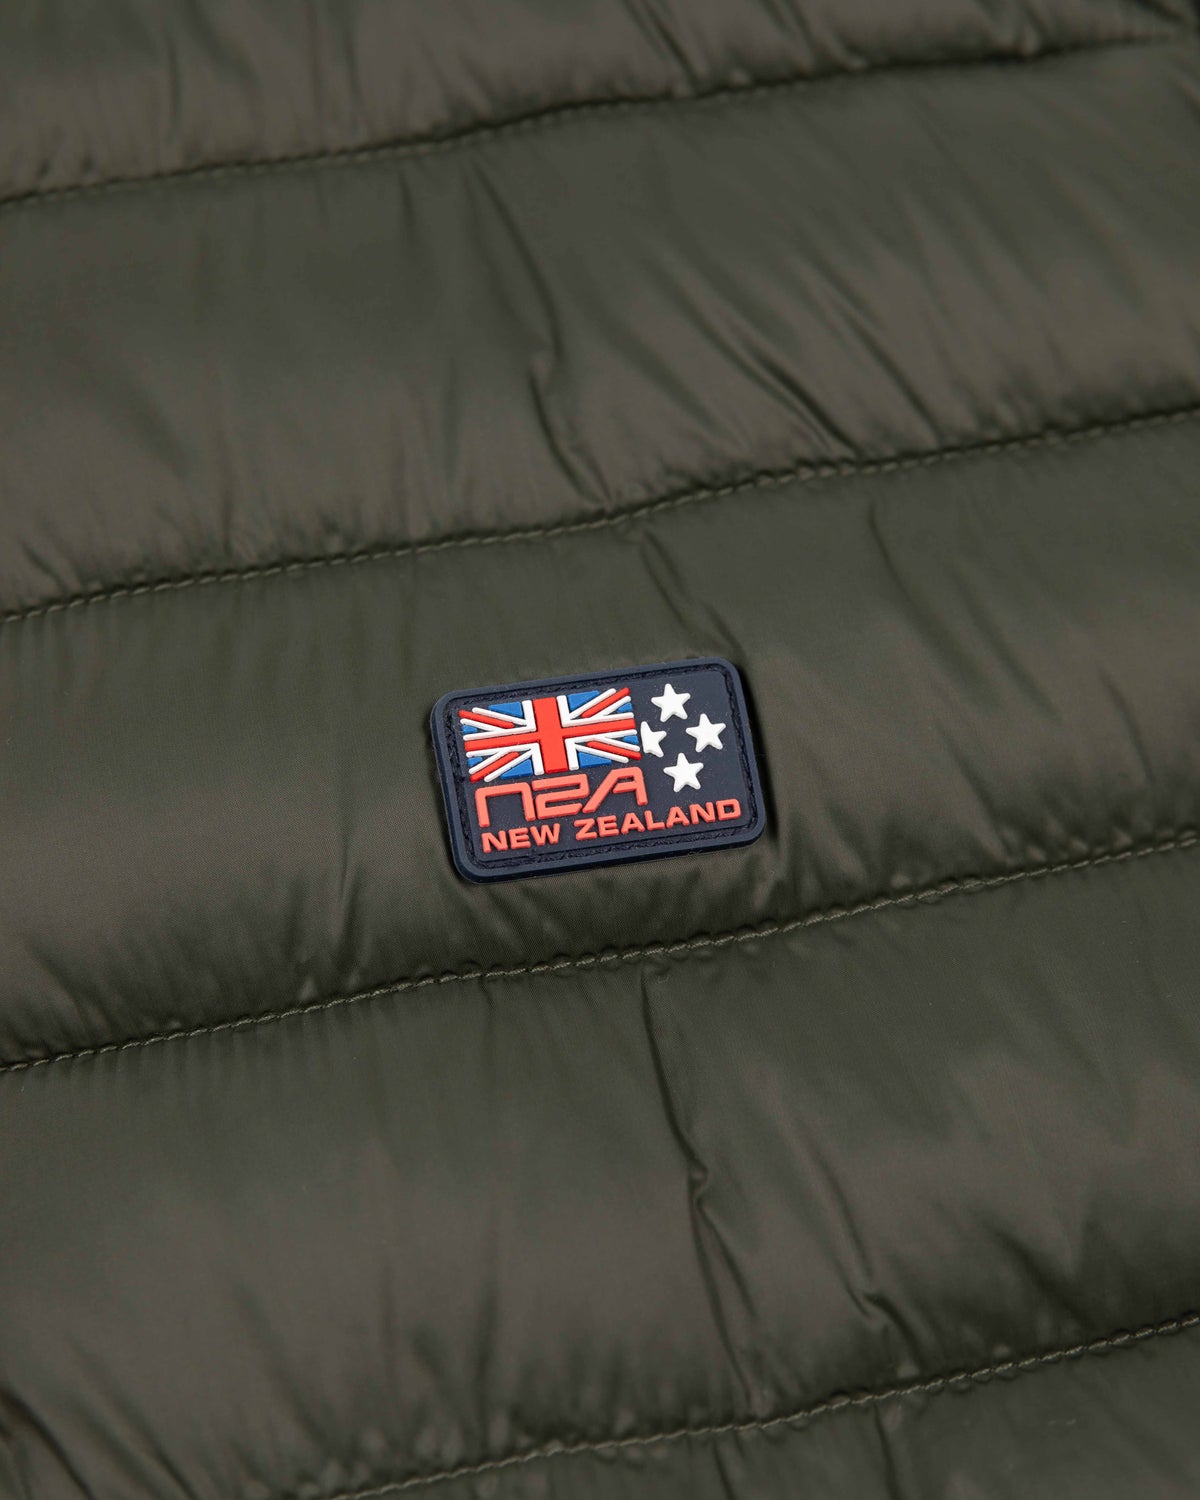 Padded jacket softshell - Jacket Army